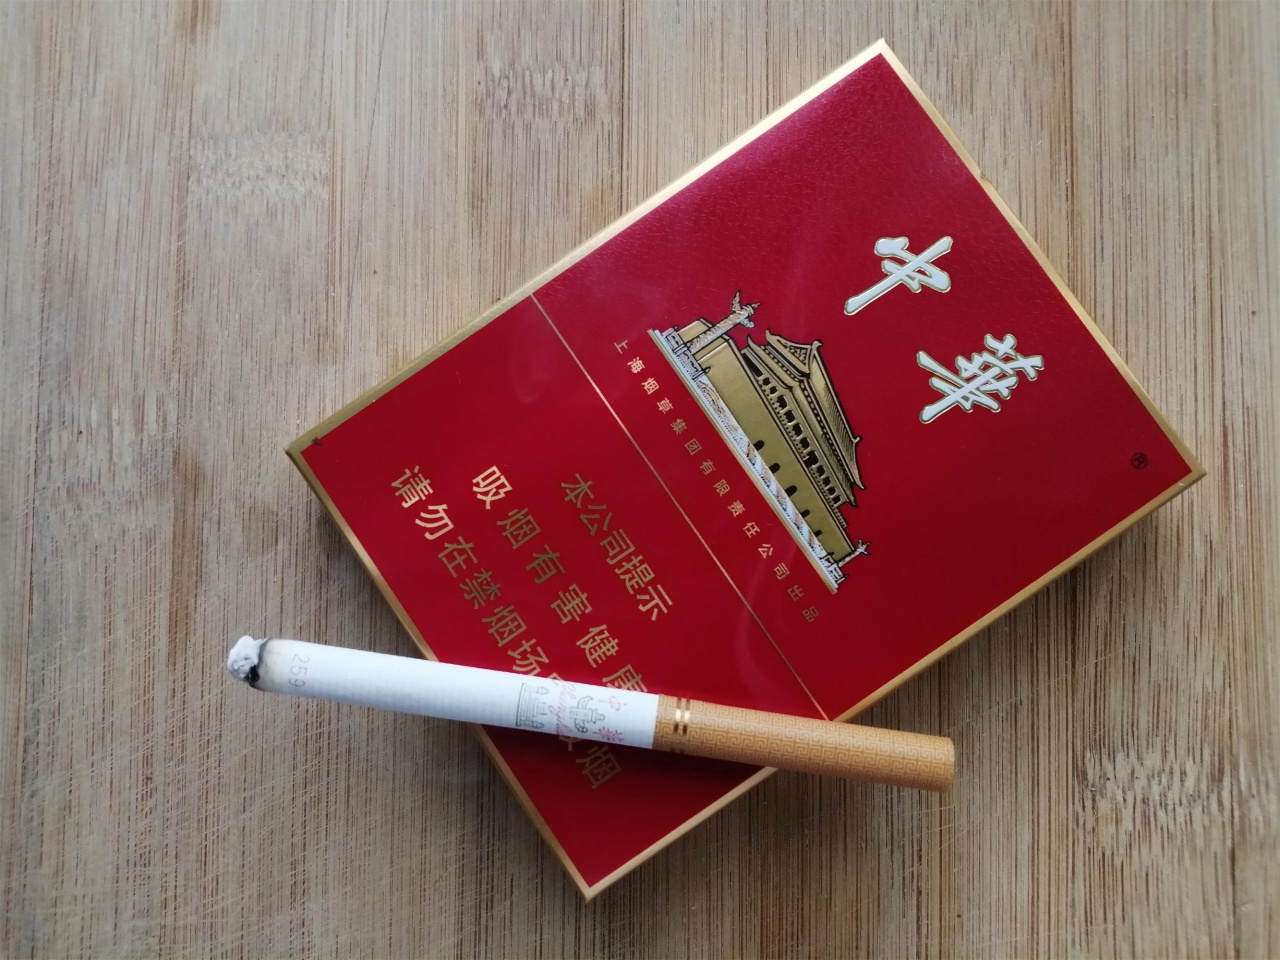 三峡（香烟型雪茄） - 香烟品鉴 - 烟悦网论坛